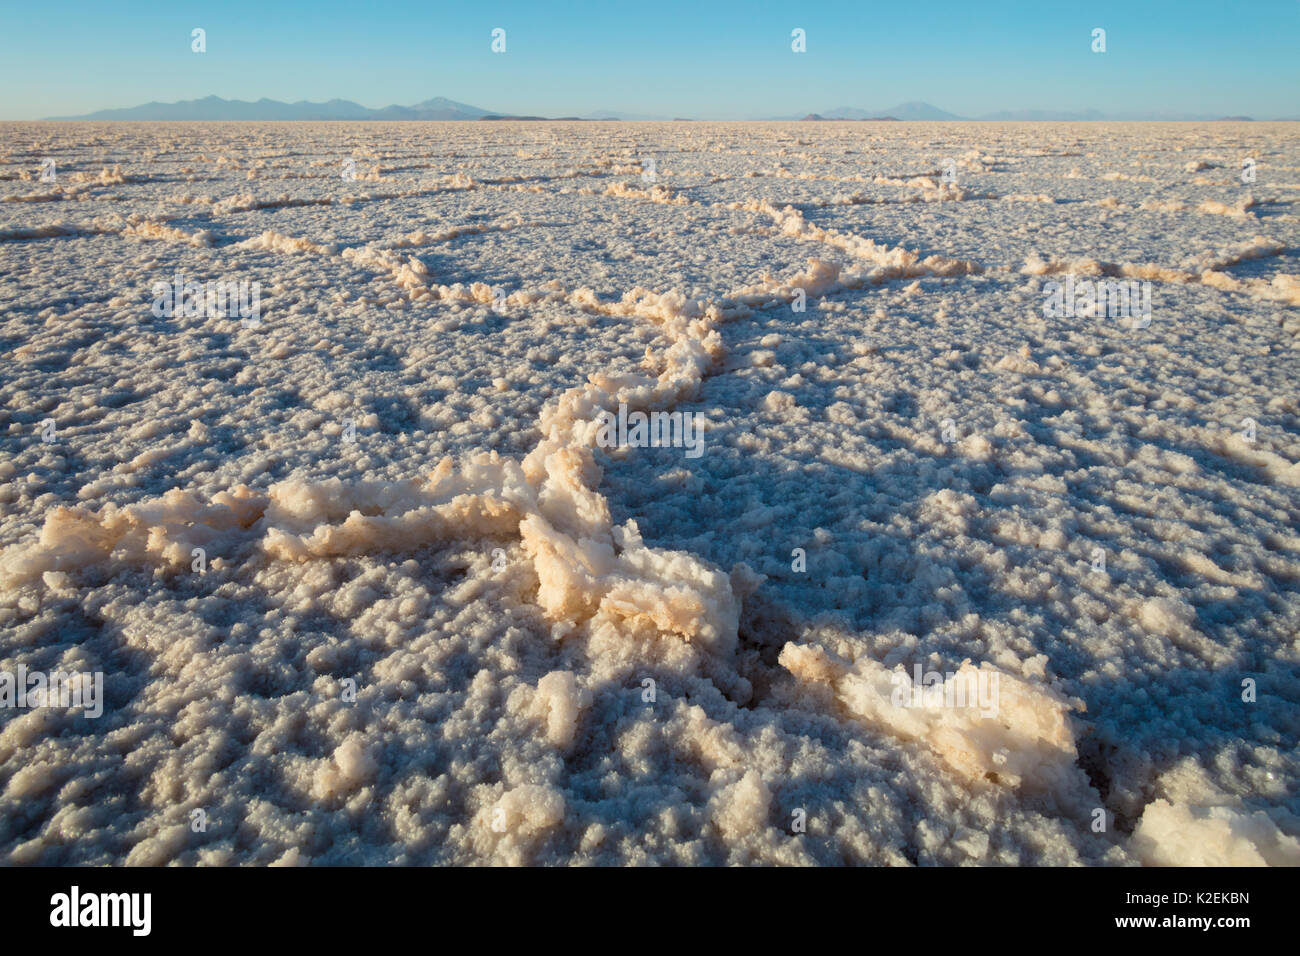 Salt crystals on surface of Salar de Uyuni Salt Pan. Bolivia. December 2016. Stock Photo